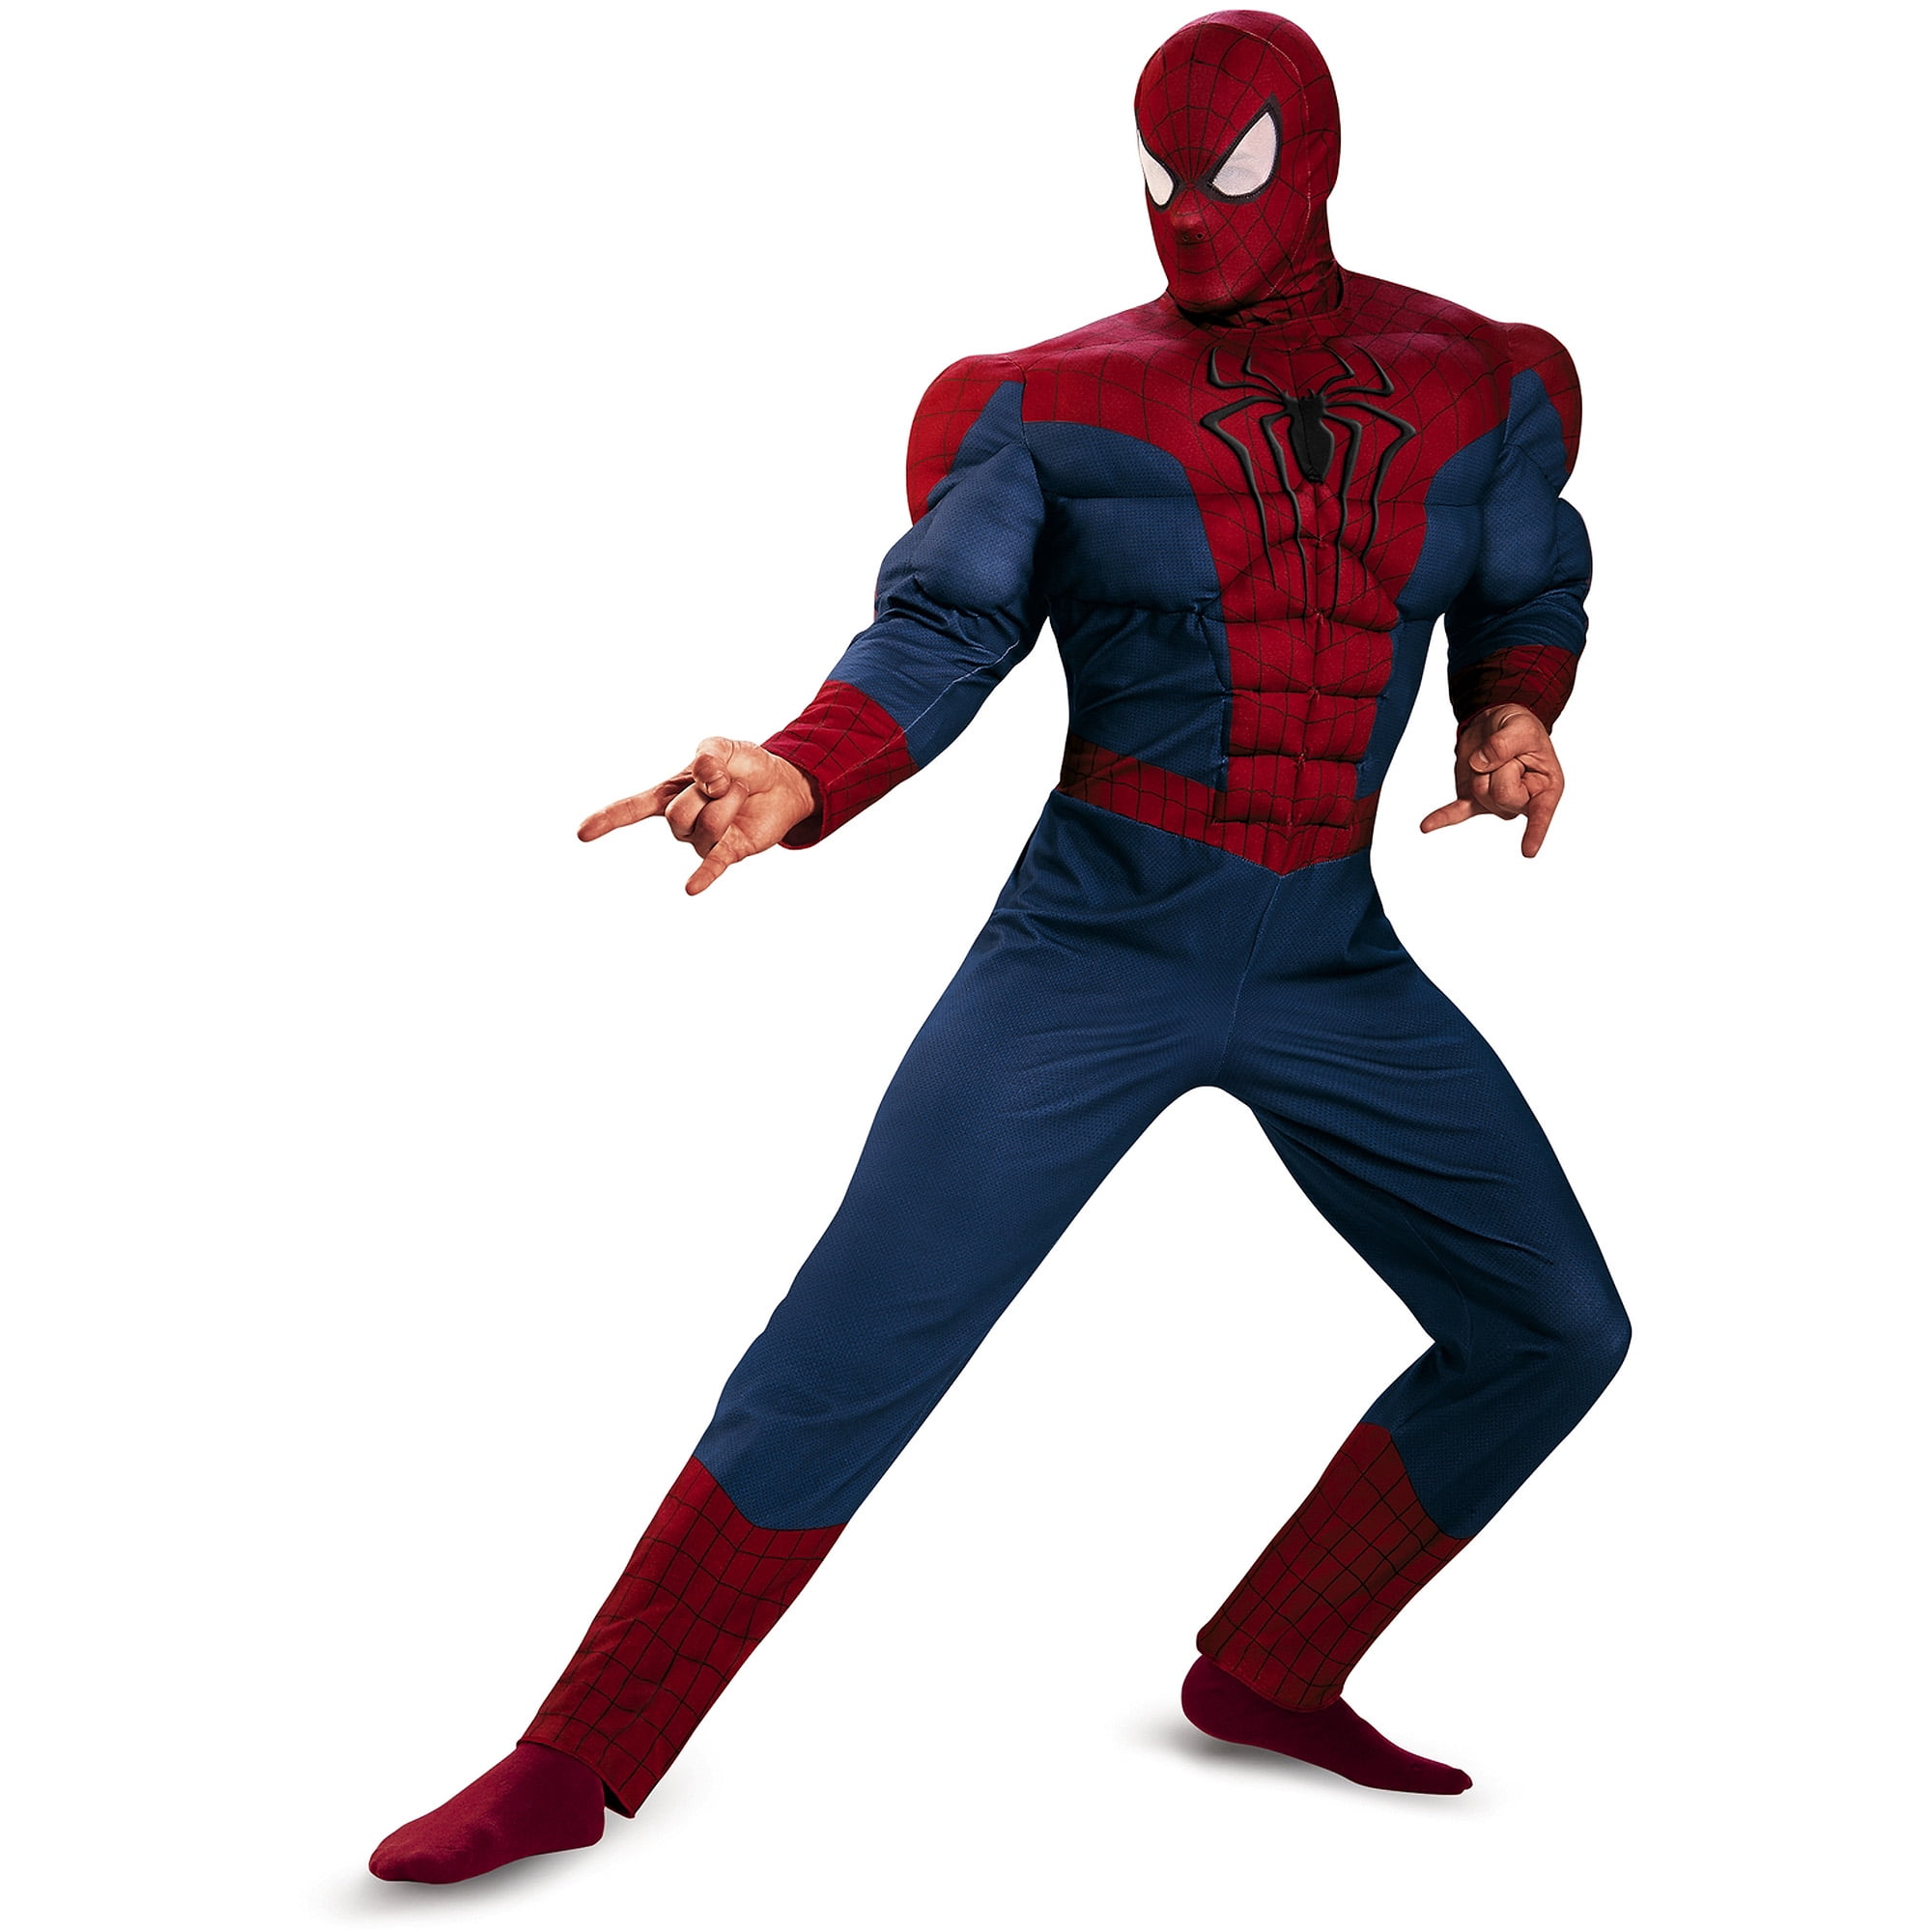 Spider-Man 2 Muscle Men's Adult Halloween Costume - Walmart.com